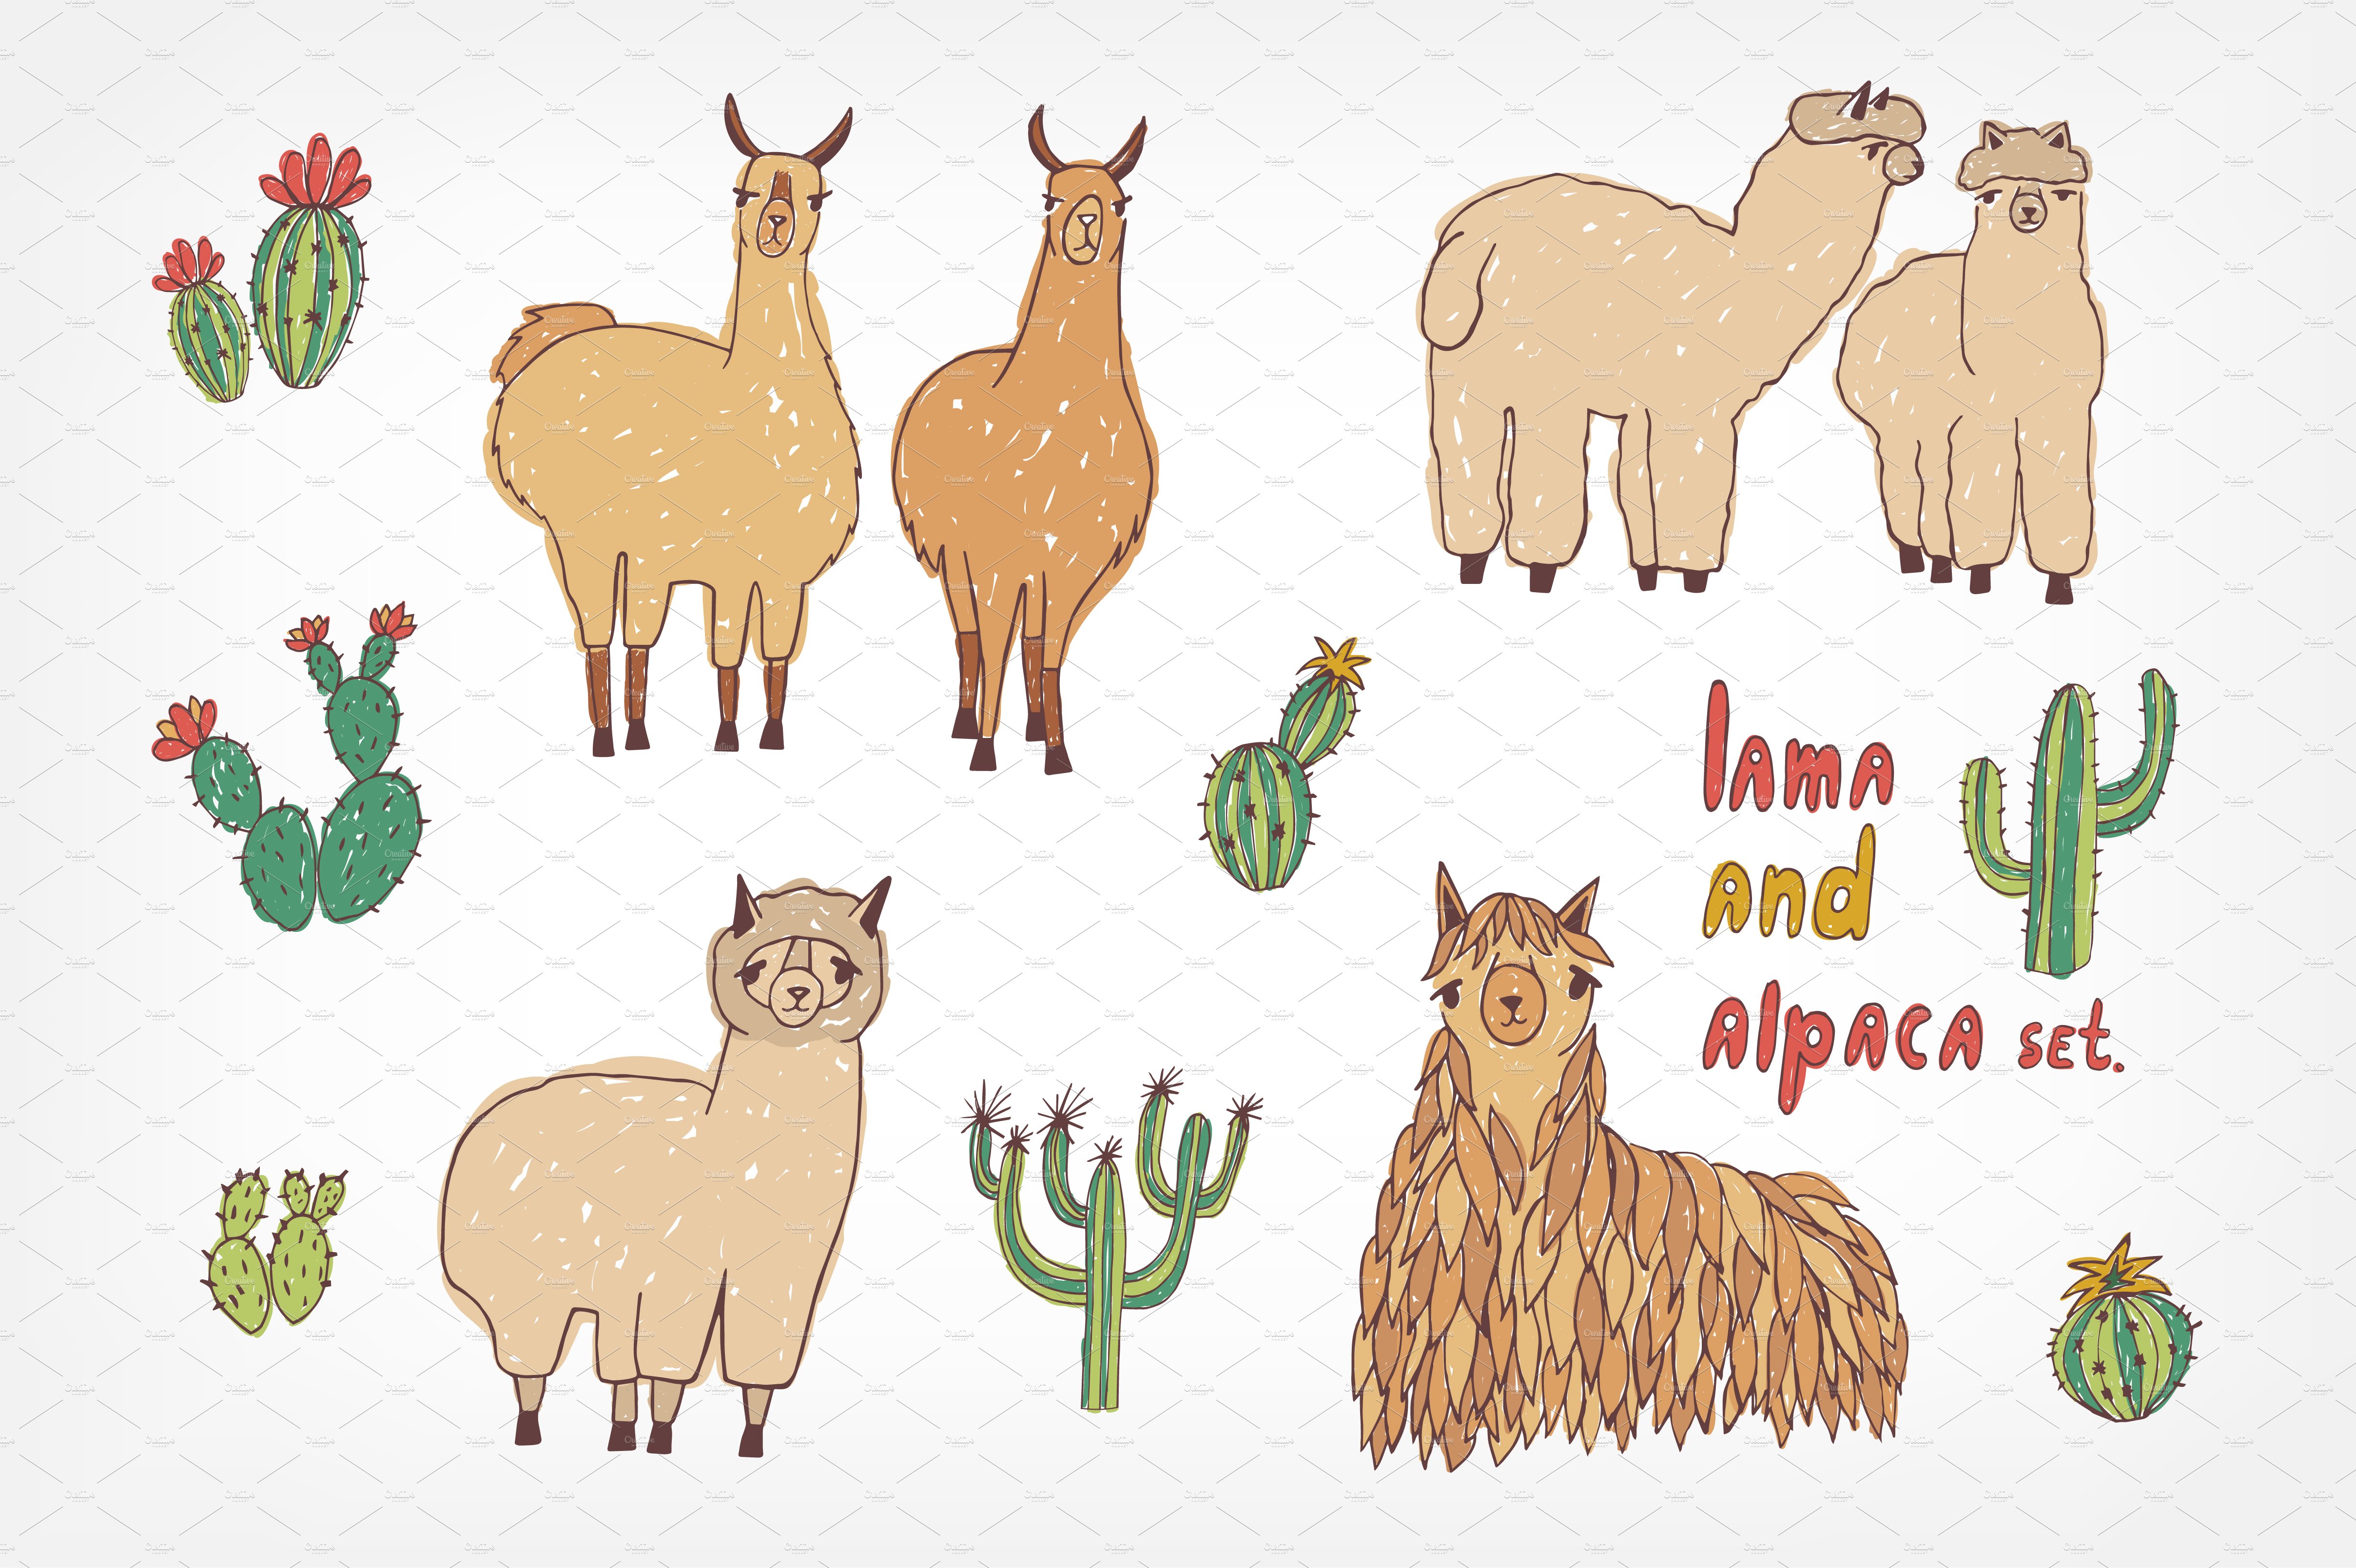 Cute lama, alpaca and cactuses cover image.